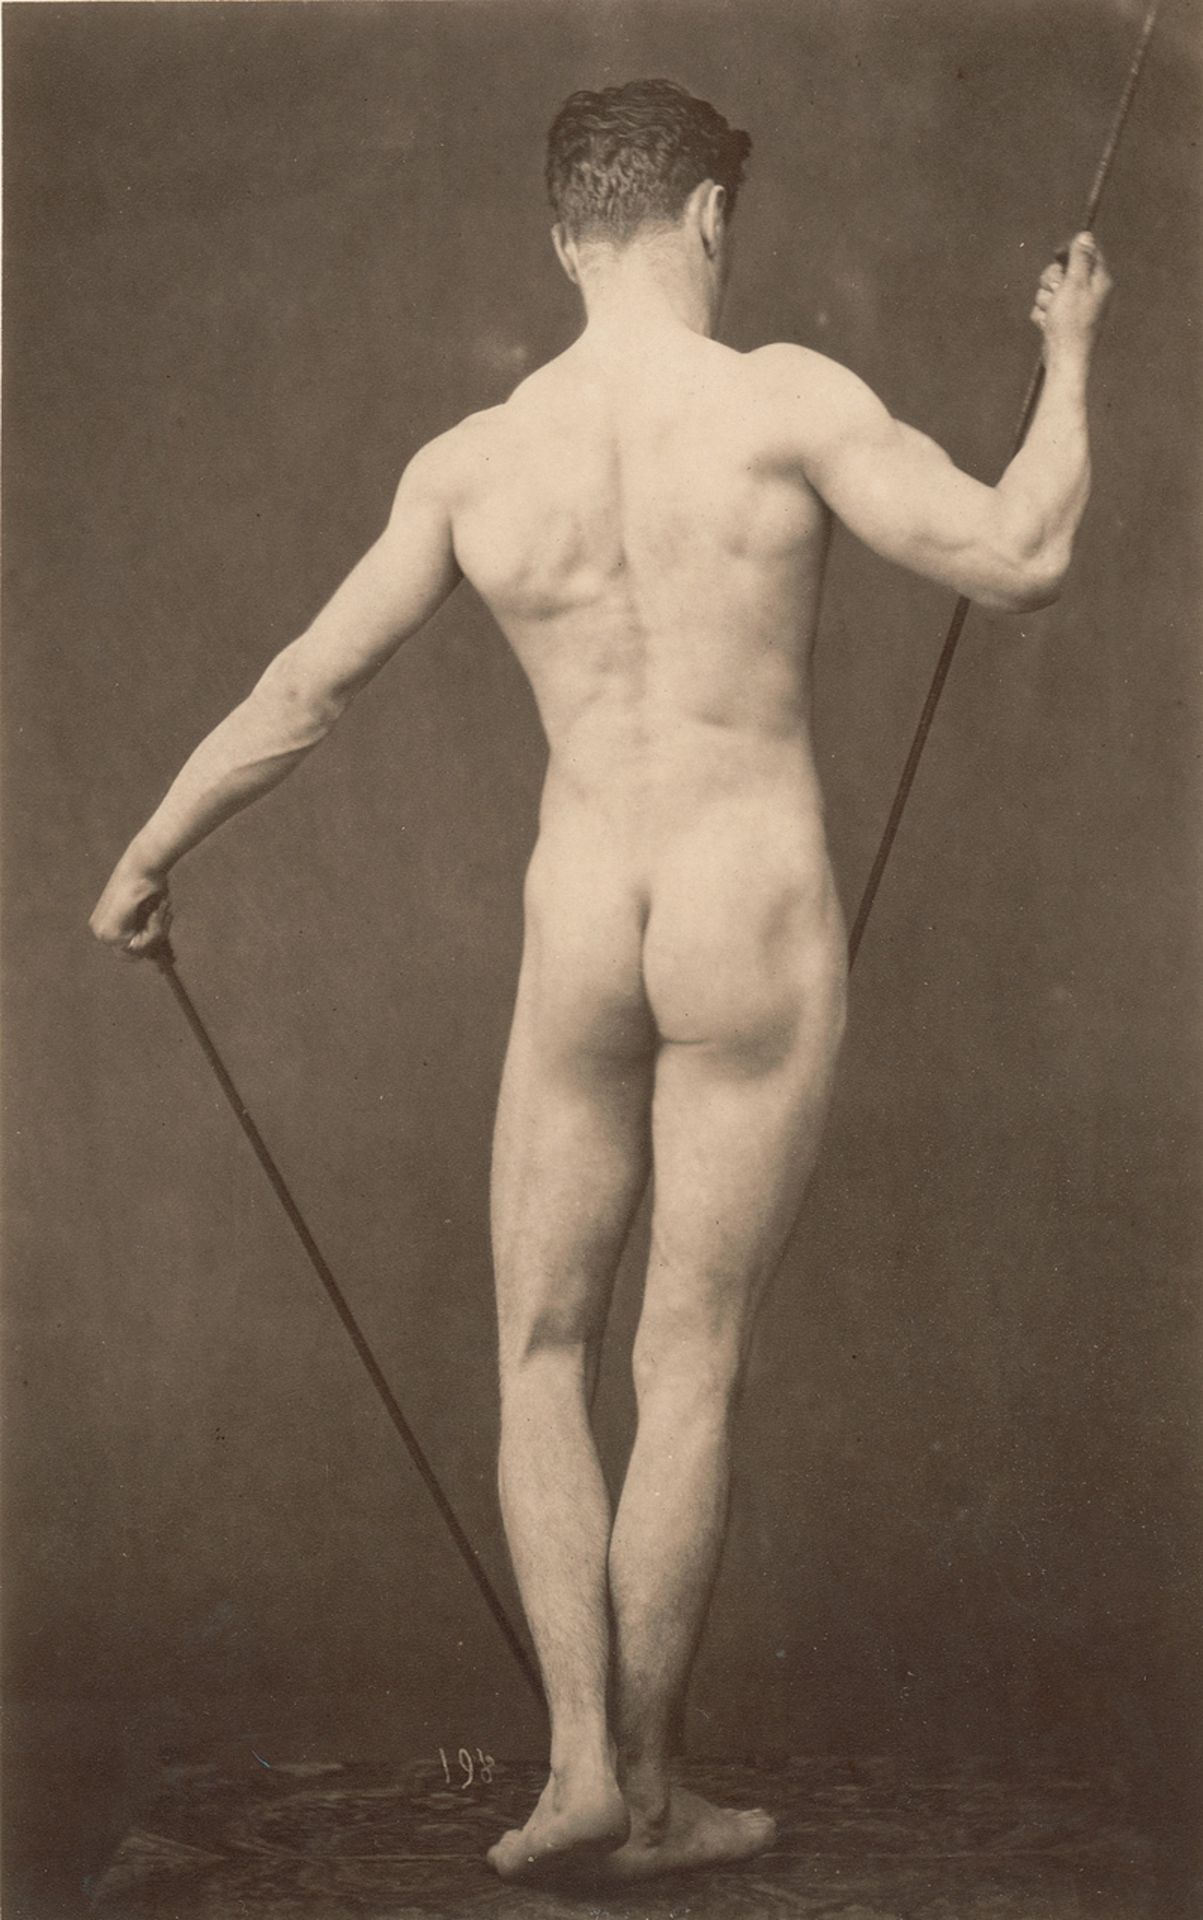 Marconi, Gaudenzio: Male nude